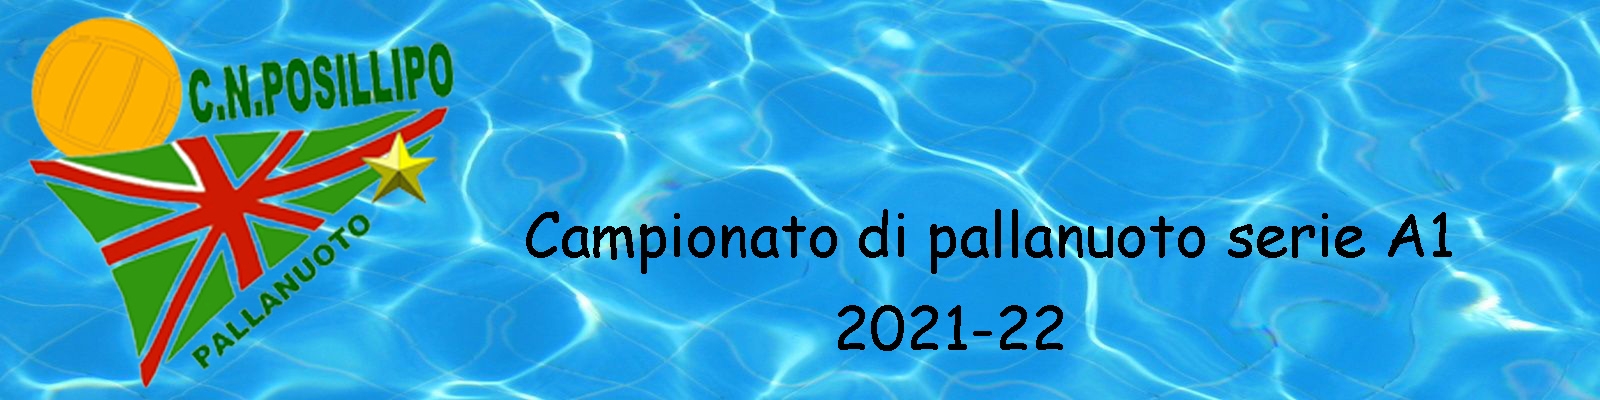 Posillipo 2021-22